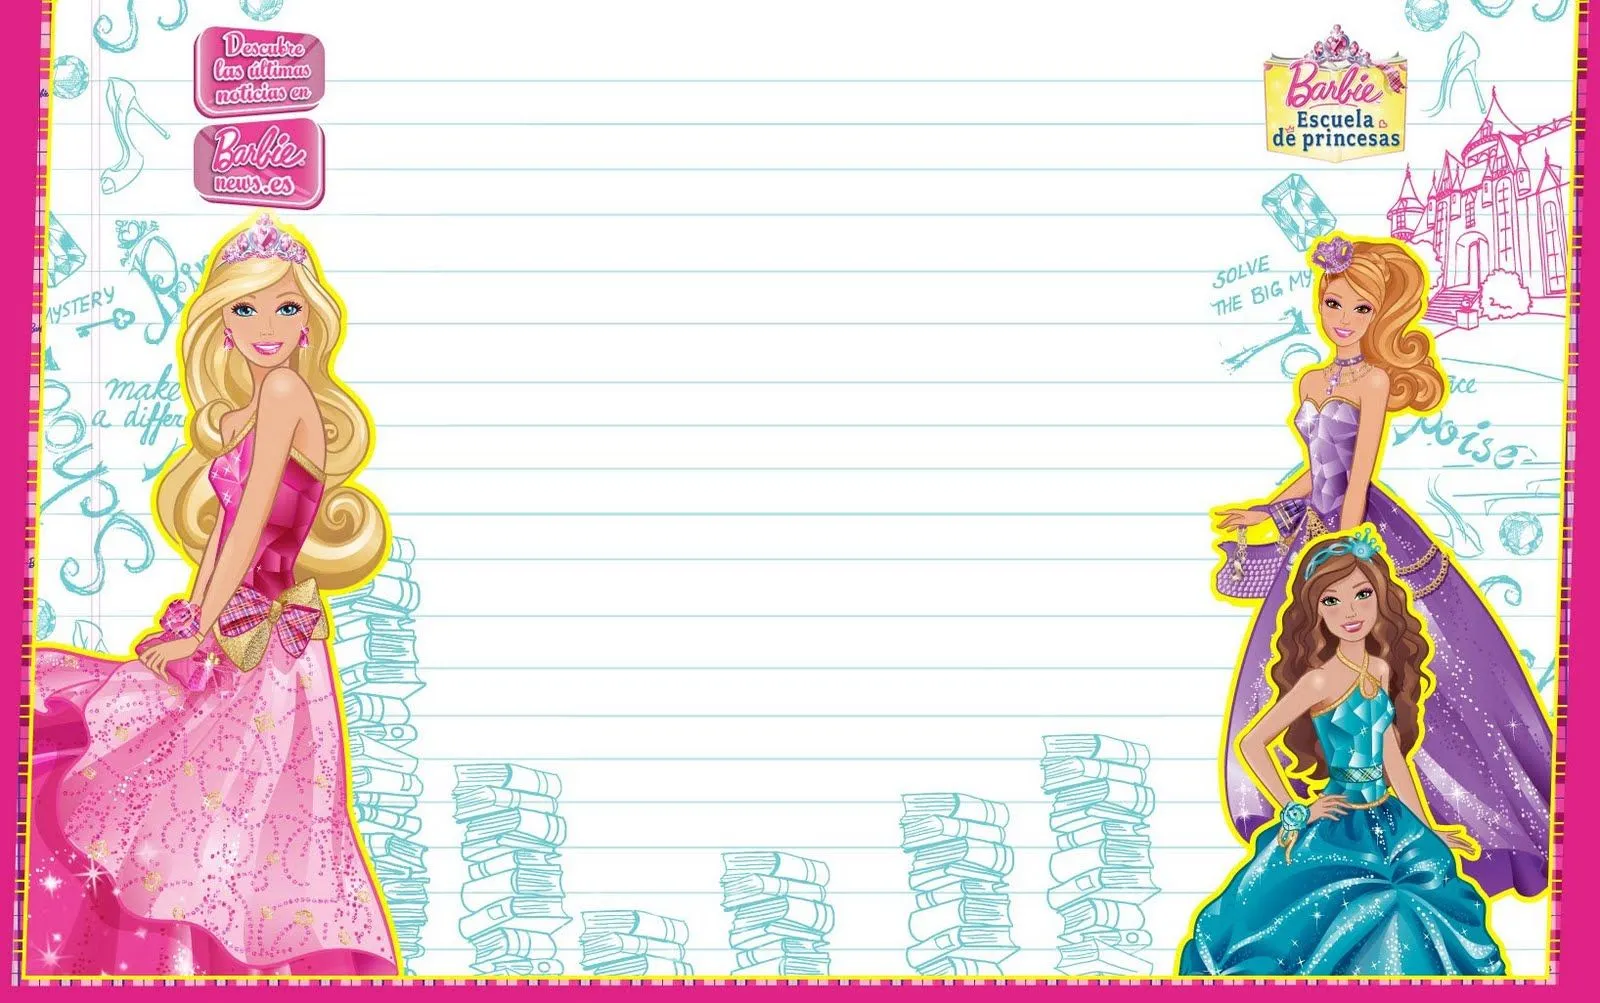  ... una aventura de sirenas: Nueva imagen de Barbie escuela de princesas